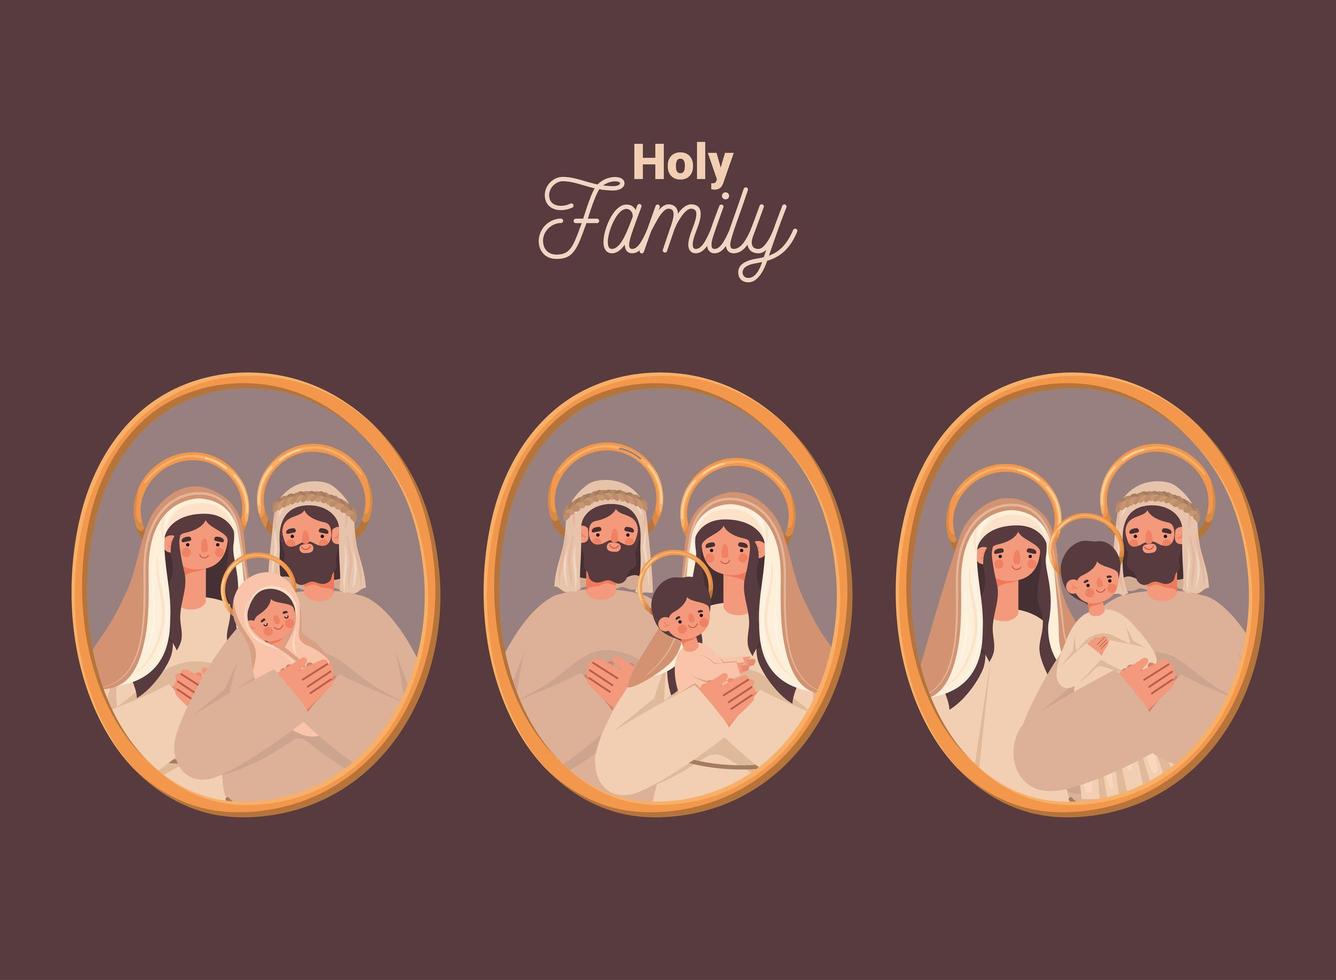 Porträts der Heiligen Familie vektor